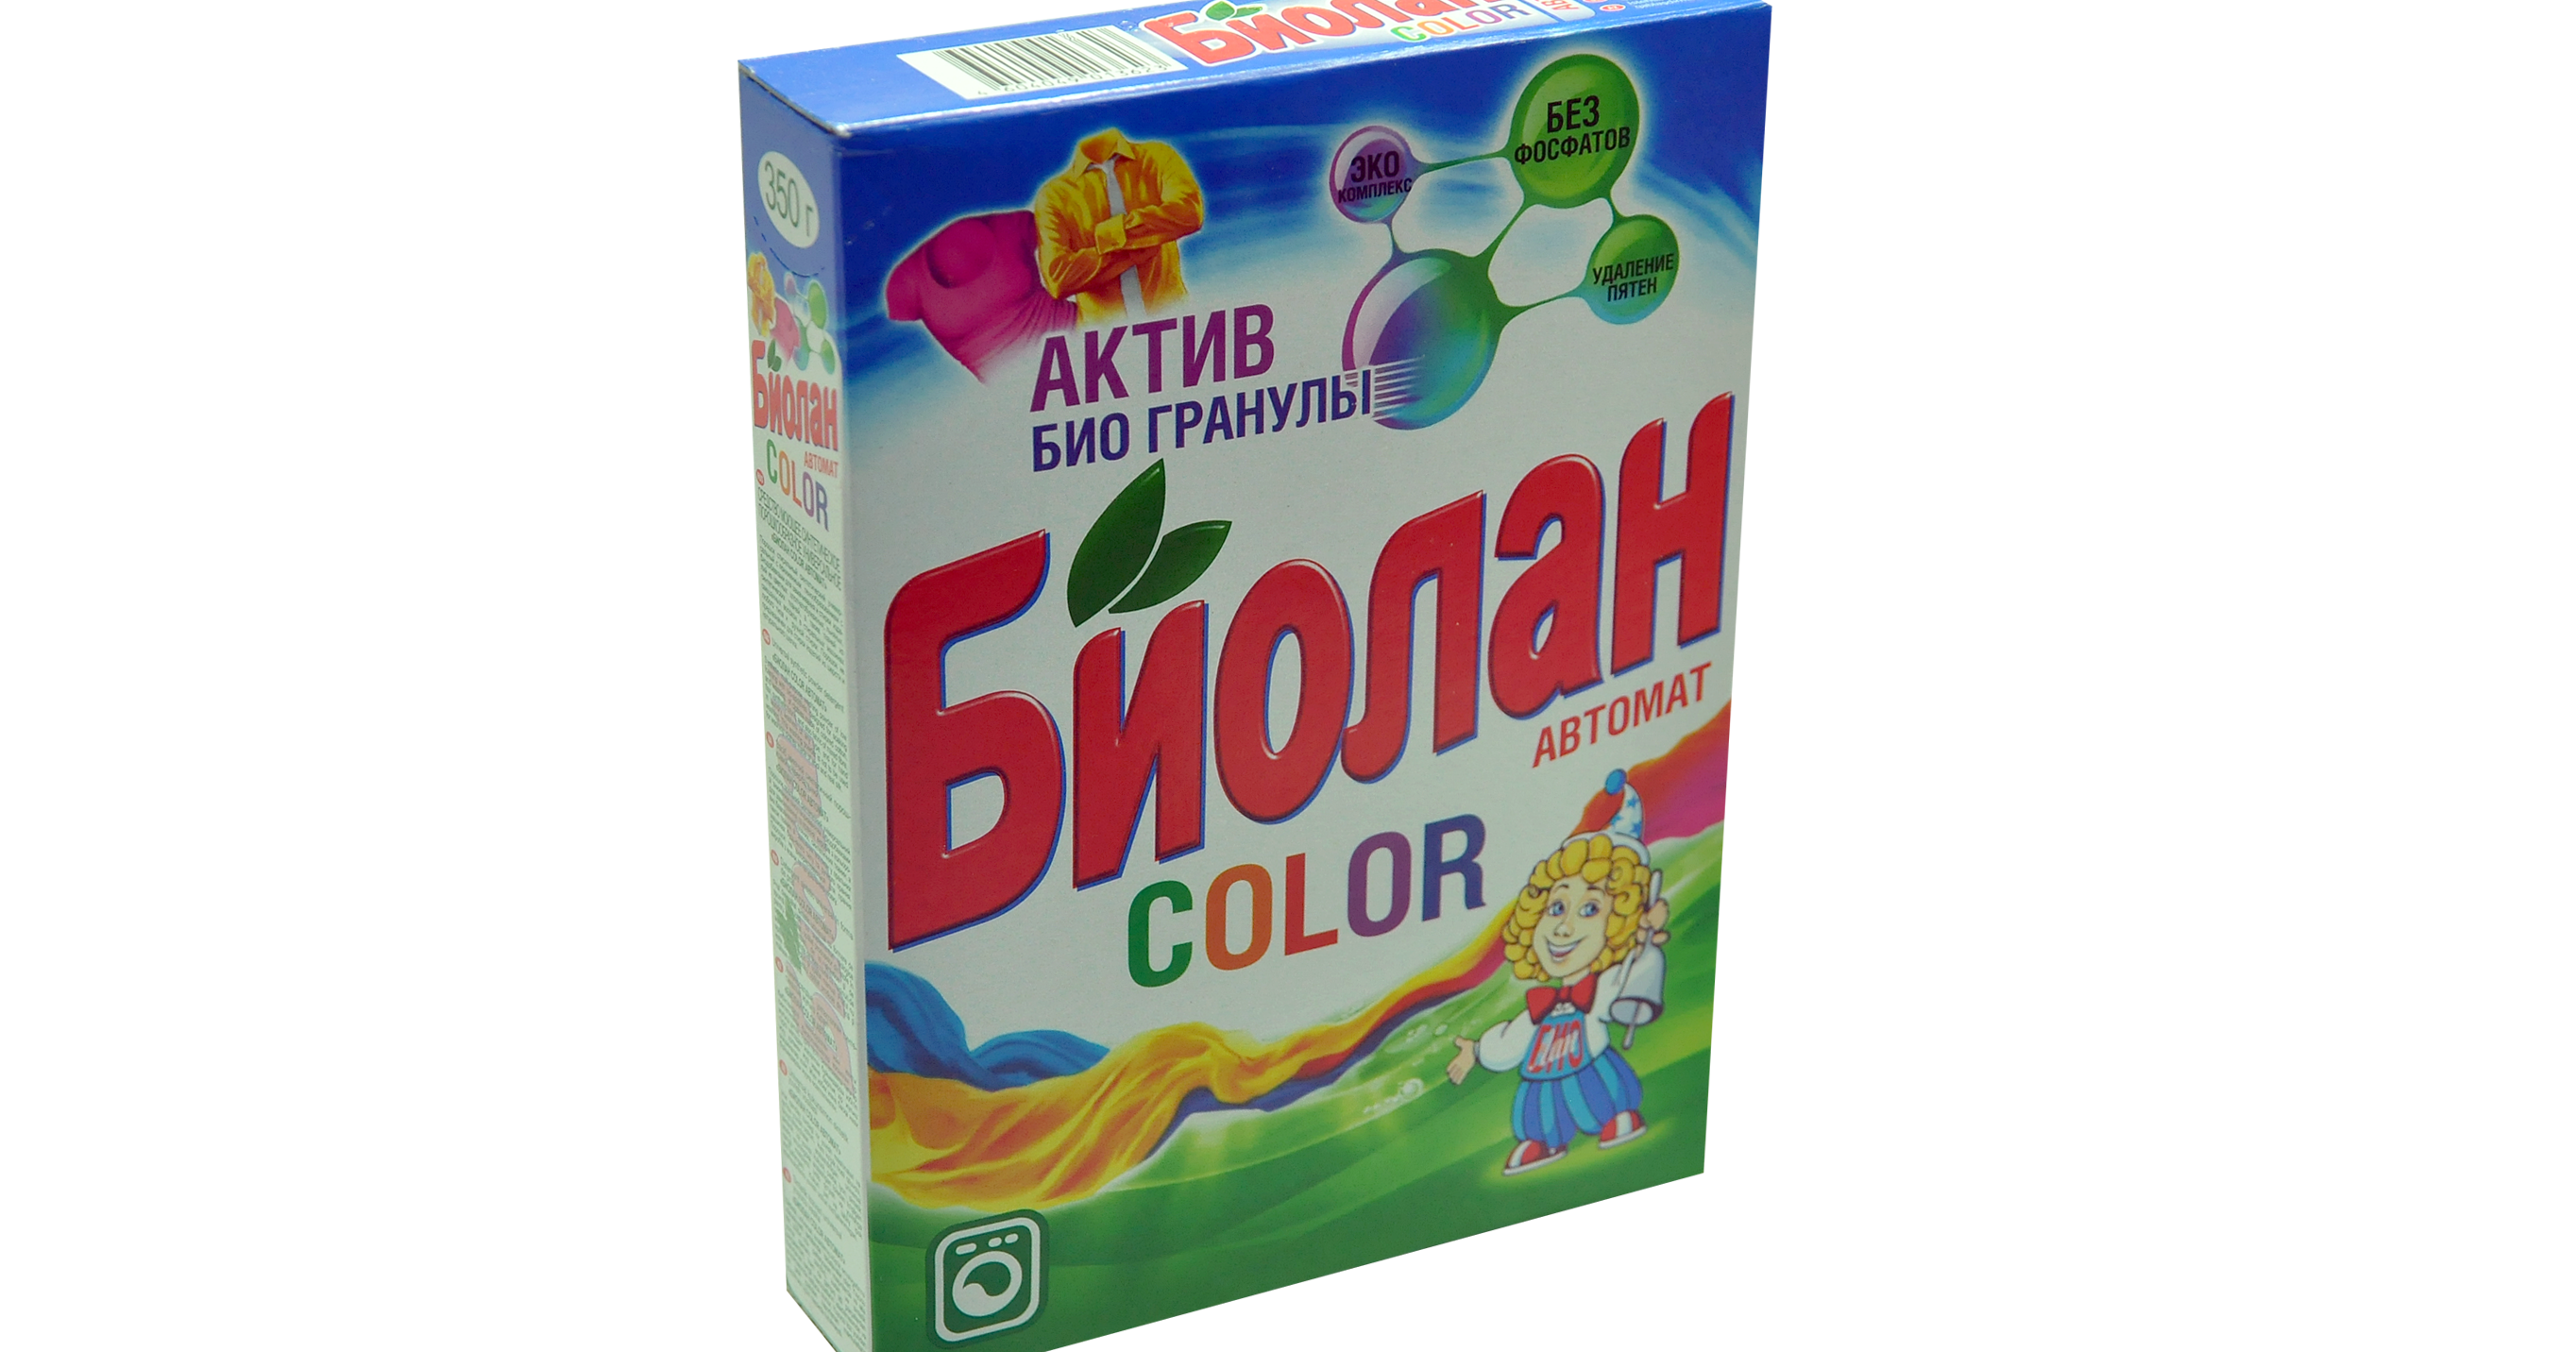 biolan color automatic